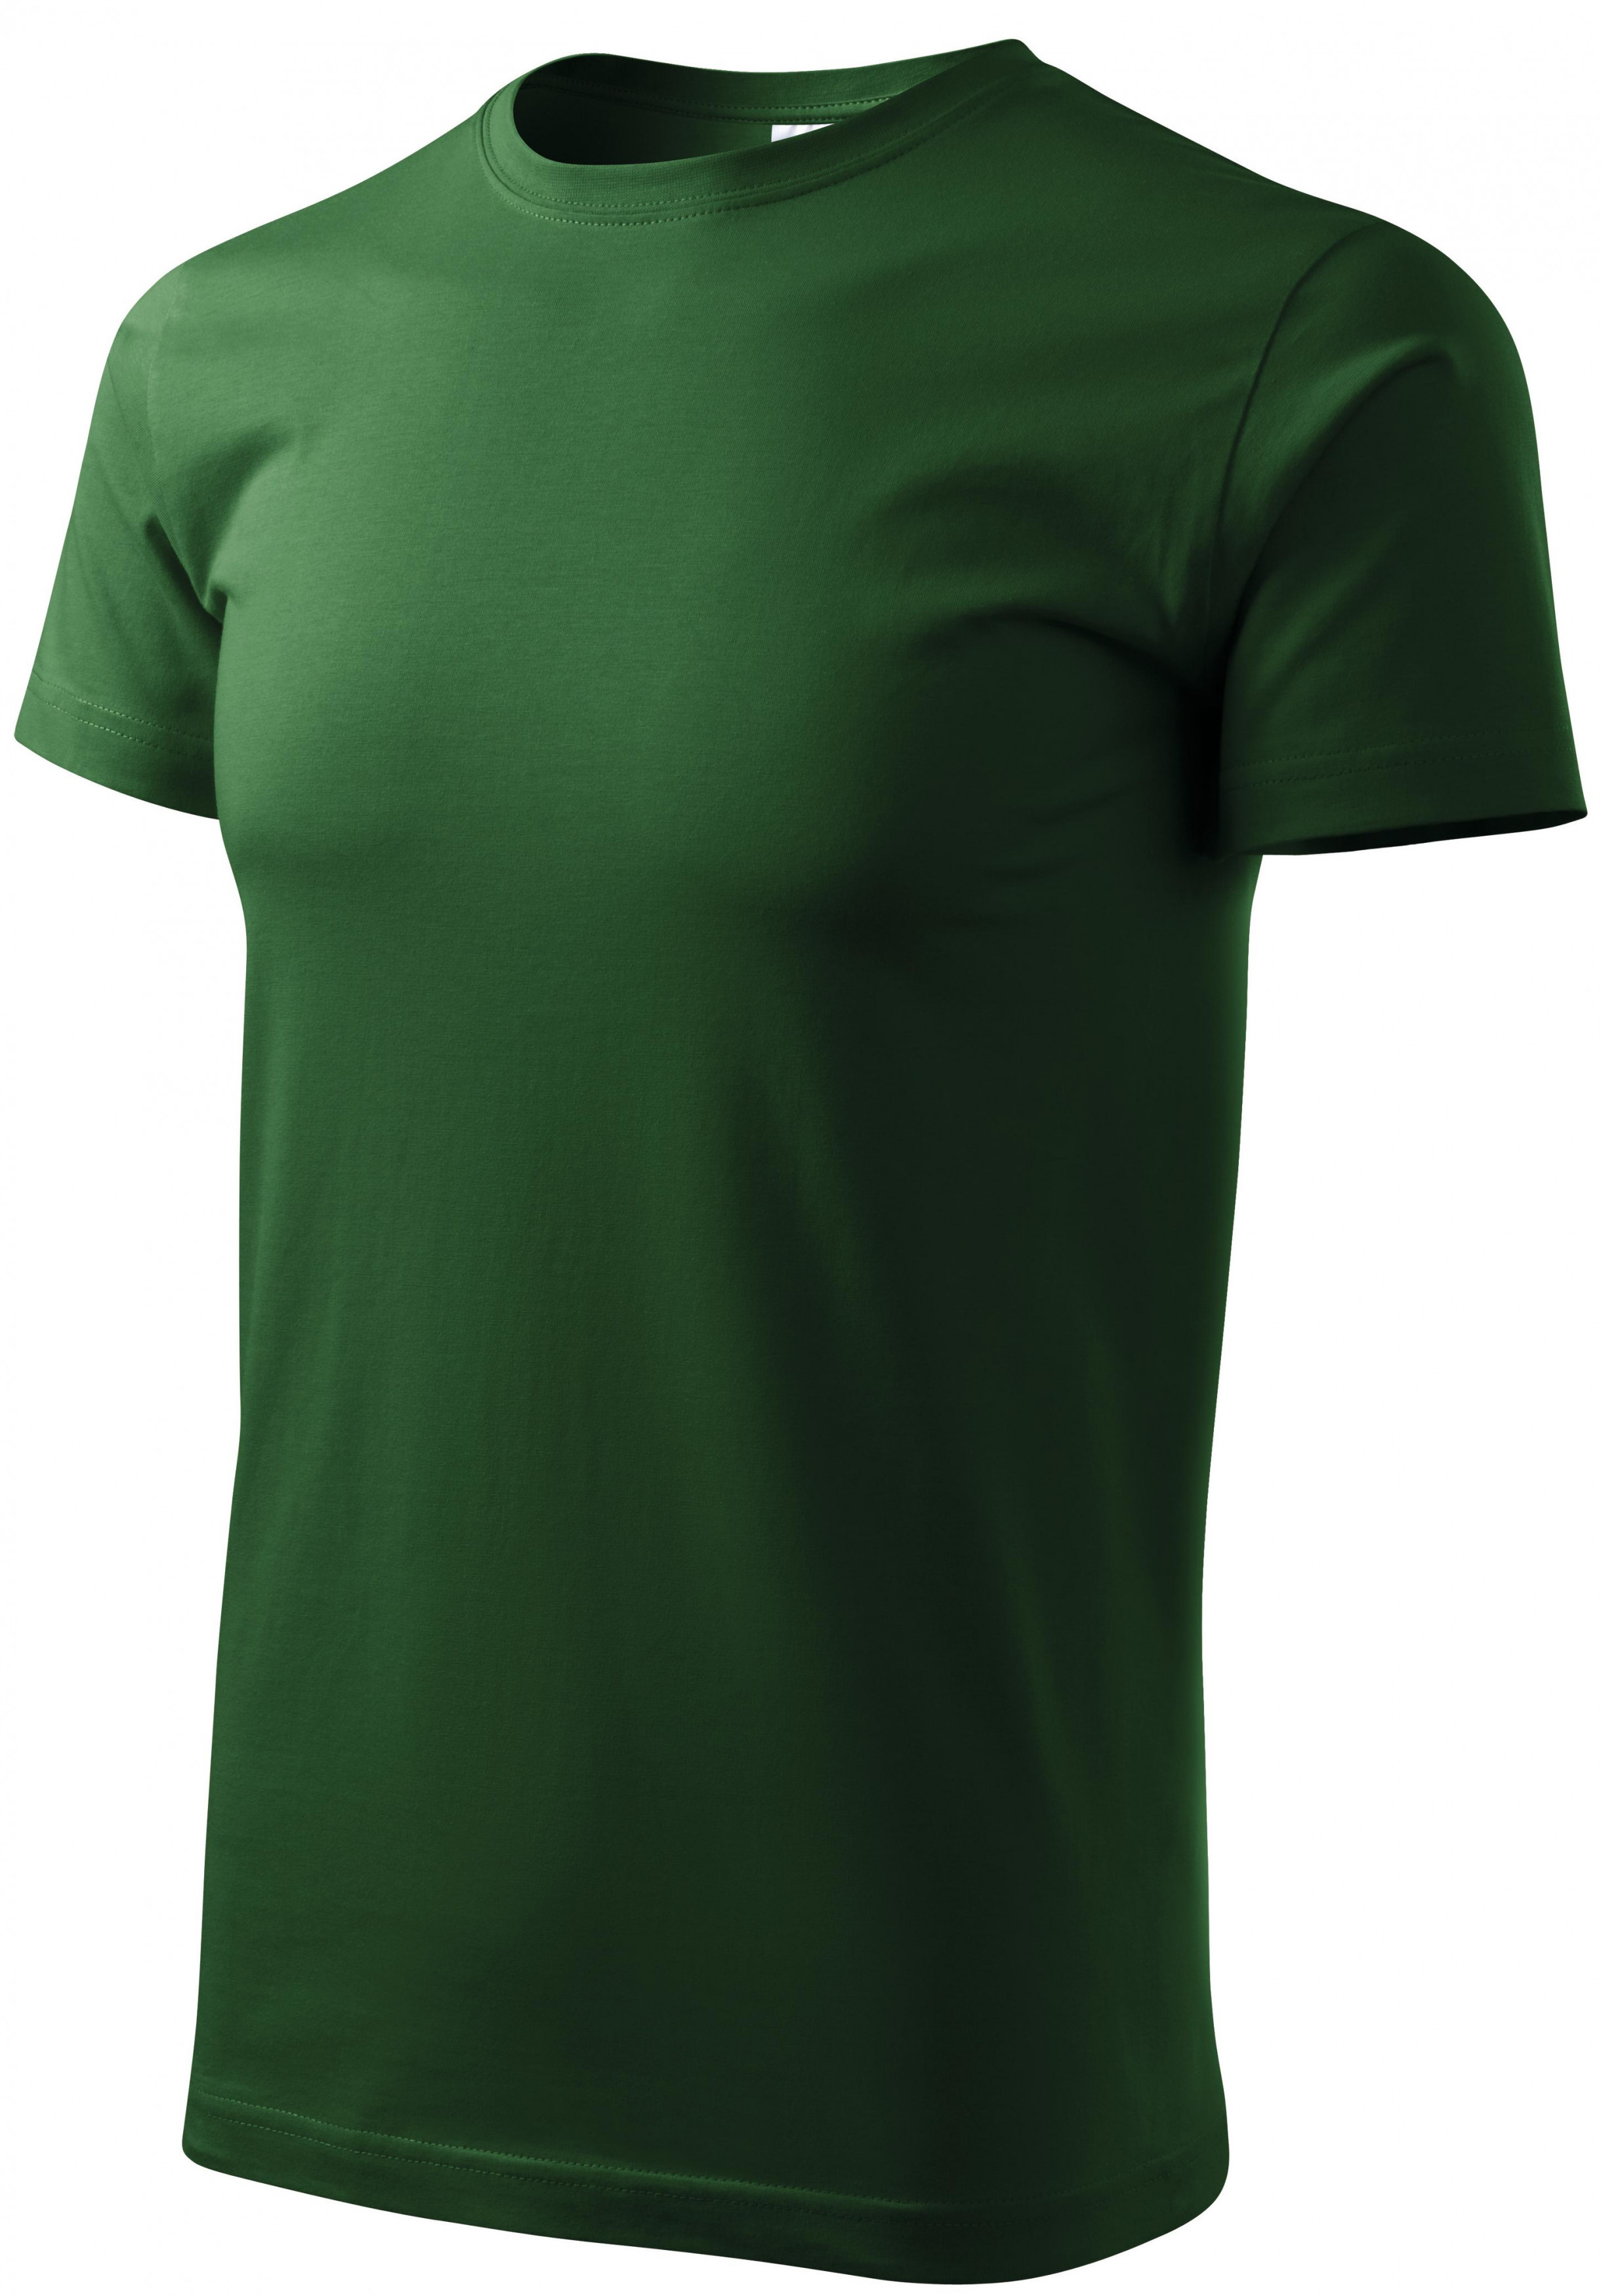 Unisex nagyobb súlyú póló, üveg zöld, 2XL